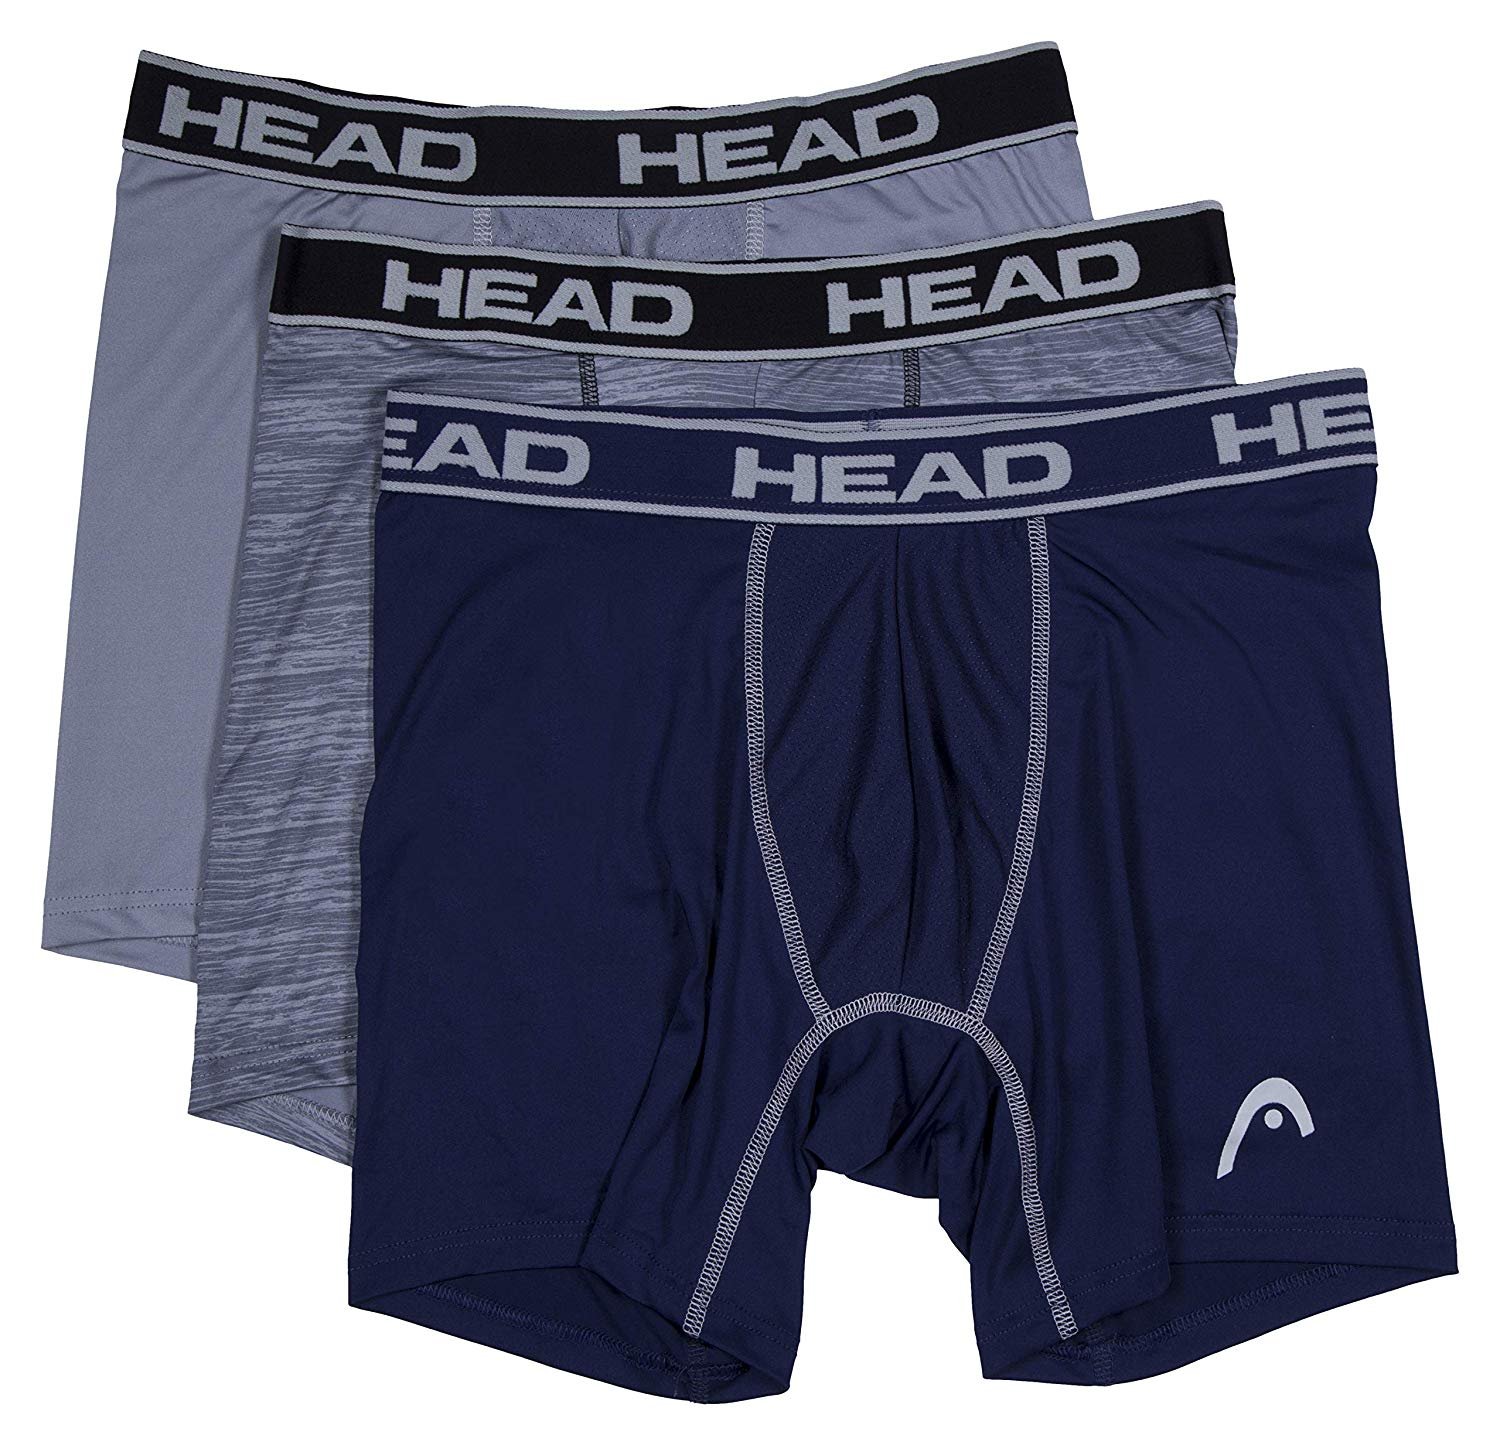 HEAD Mens Performance Underwear 3-PACK Boxer Briefs S-5XL